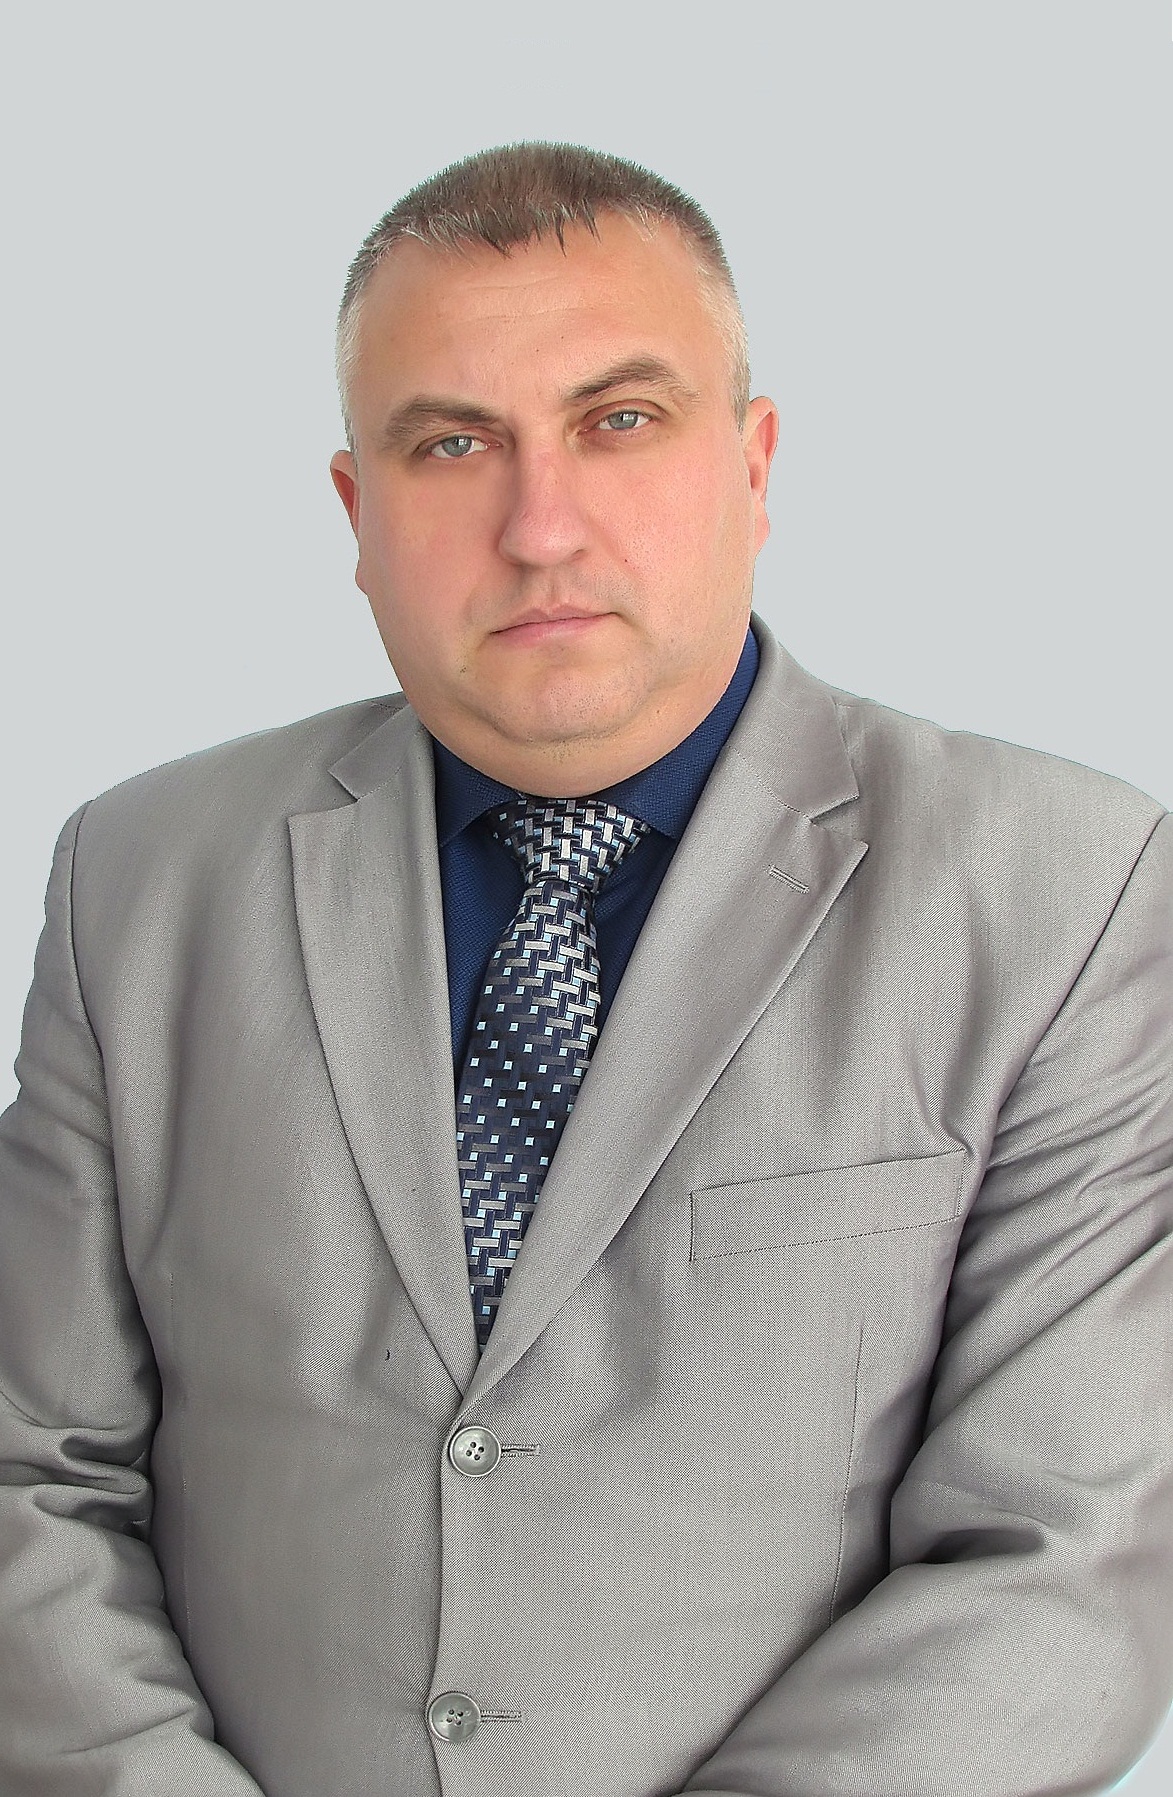 Куншин Дмитрий Владимирович.